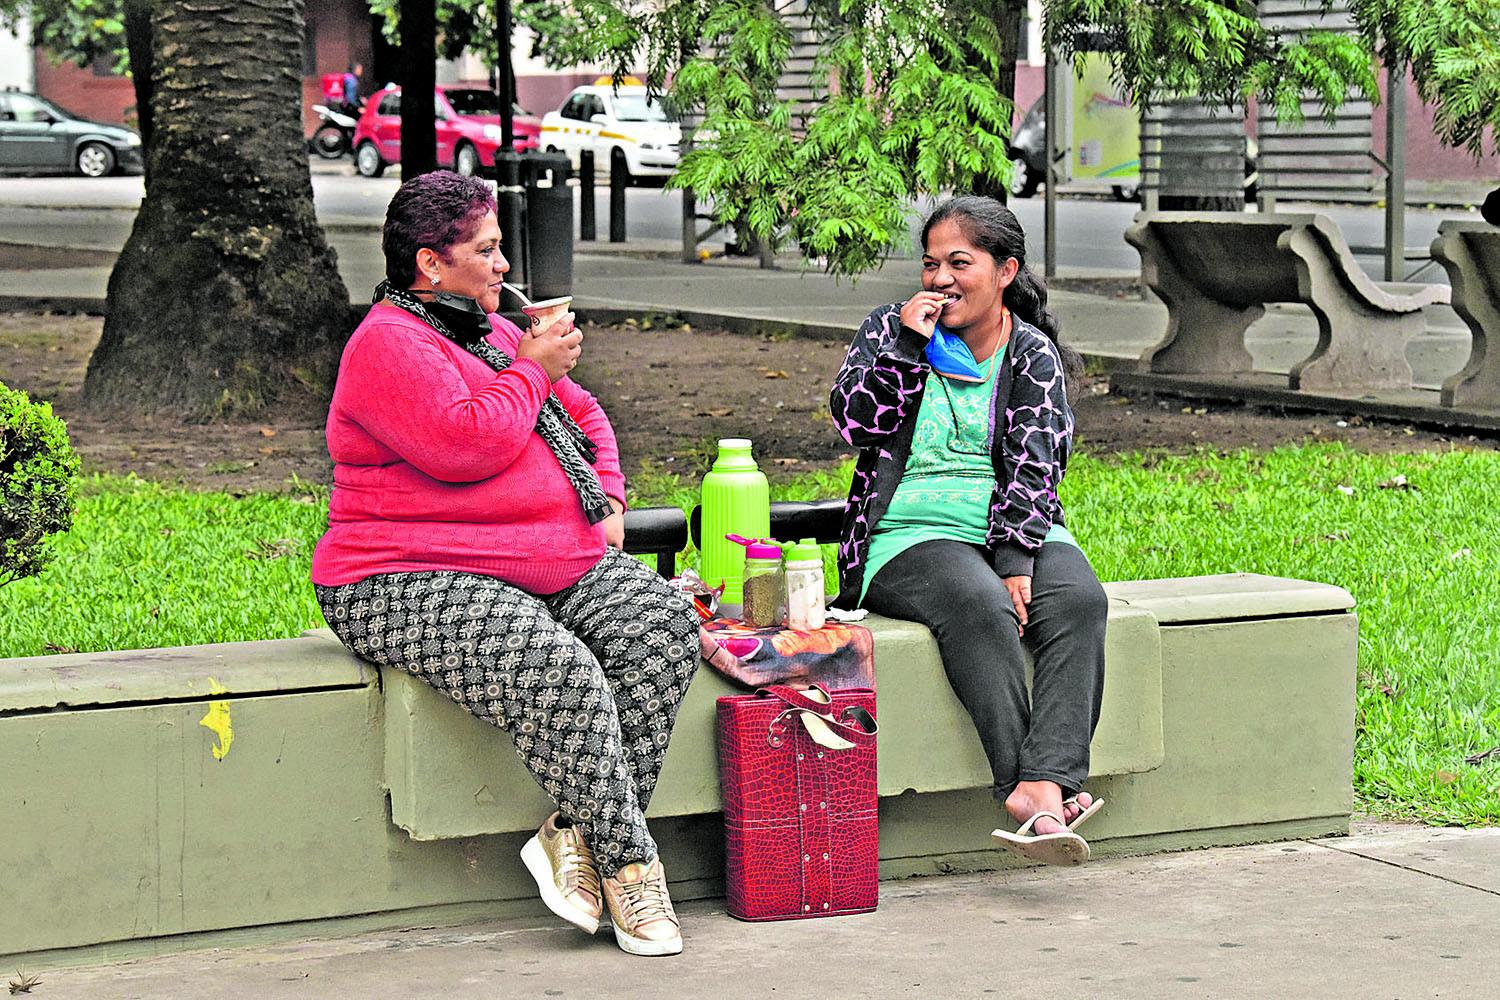 A TOMAR UNOS MATES. Vecinas se reunieron en la Plaza Belgrano, rompiendo con el distanciamiento social.